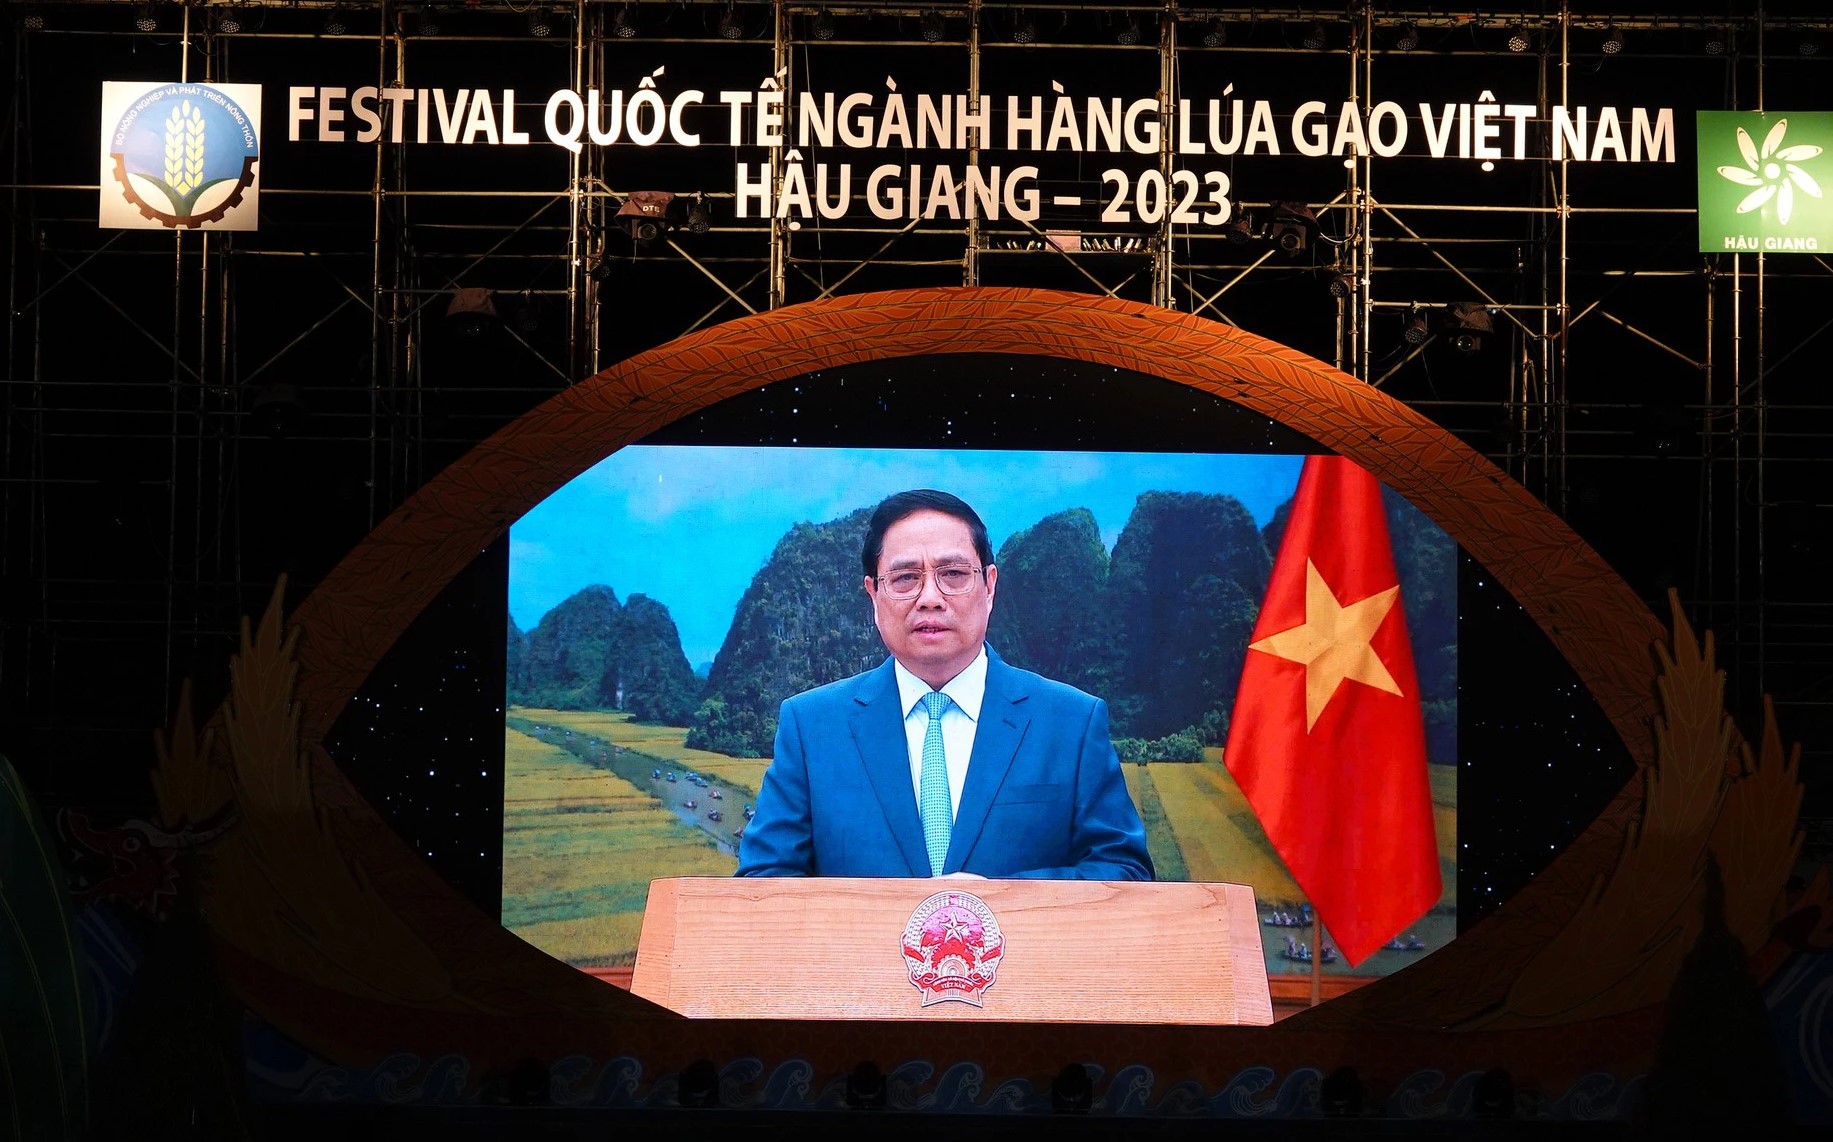 Thông điệp của Thủ tướng Phạm Minh Chính tại Festival quốc tế ngành hàng lúa gạo- Ảnh 1.